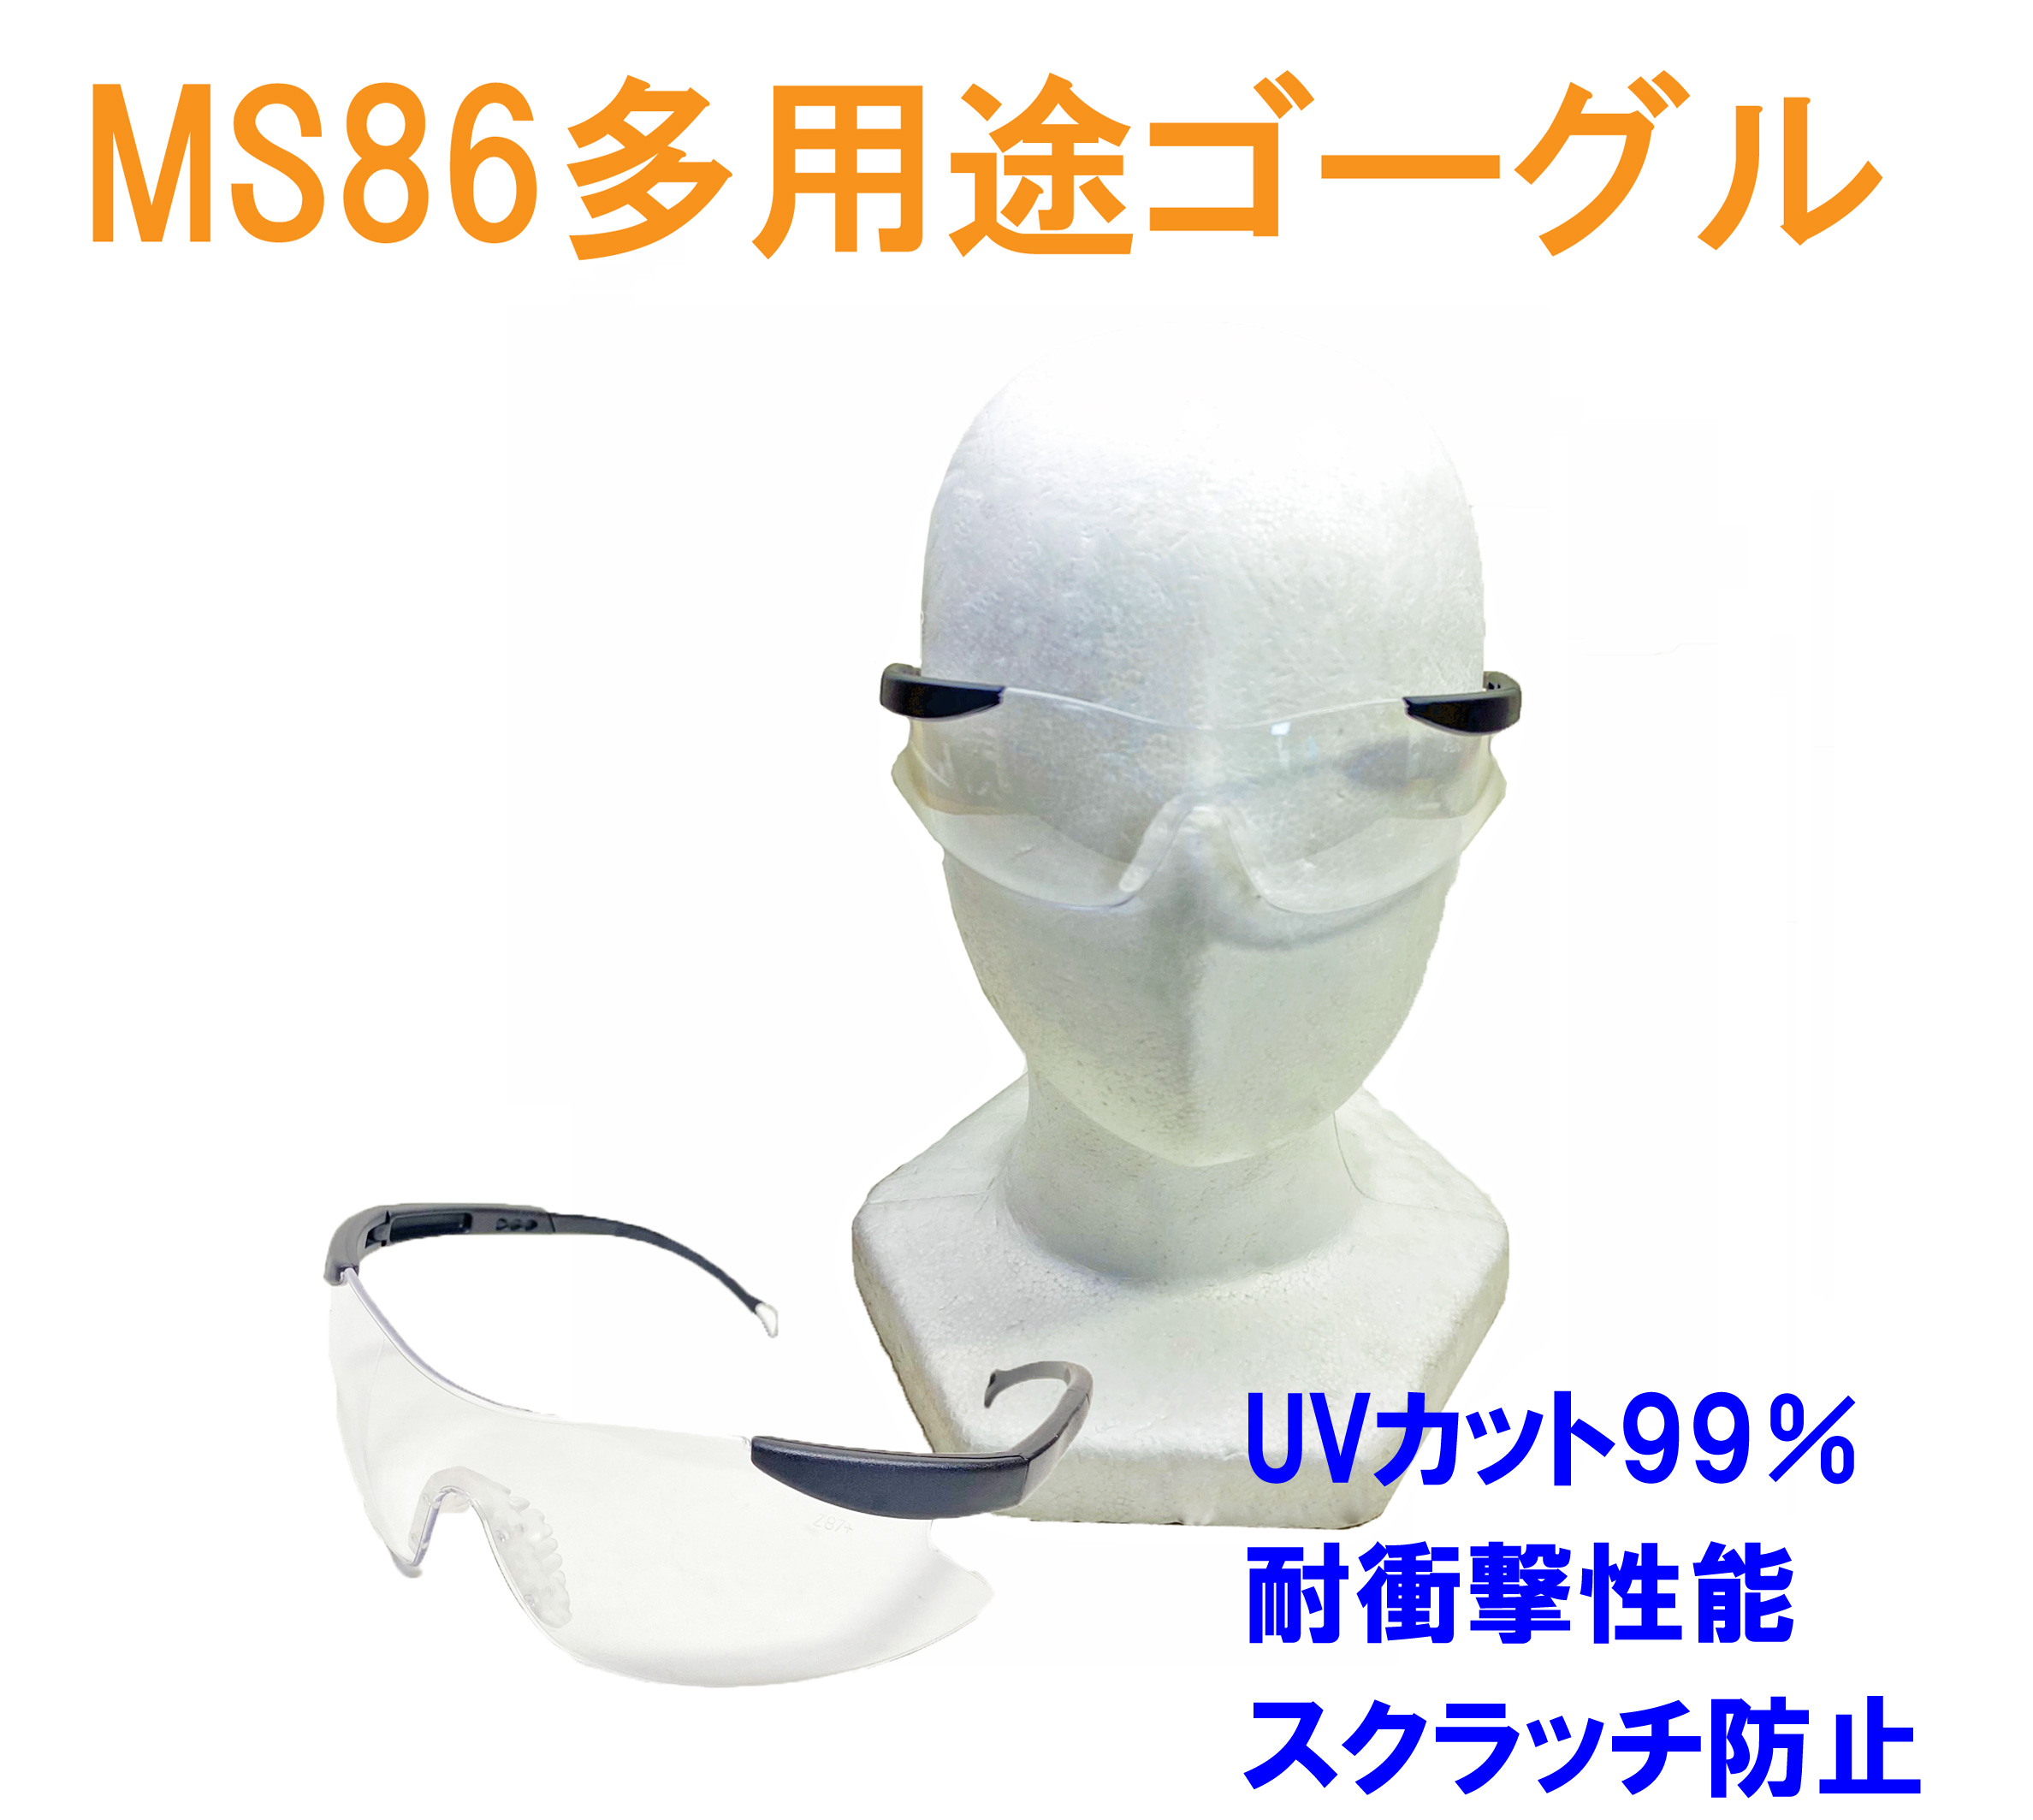 【即納】MS86多用途ゴーグル クリアー